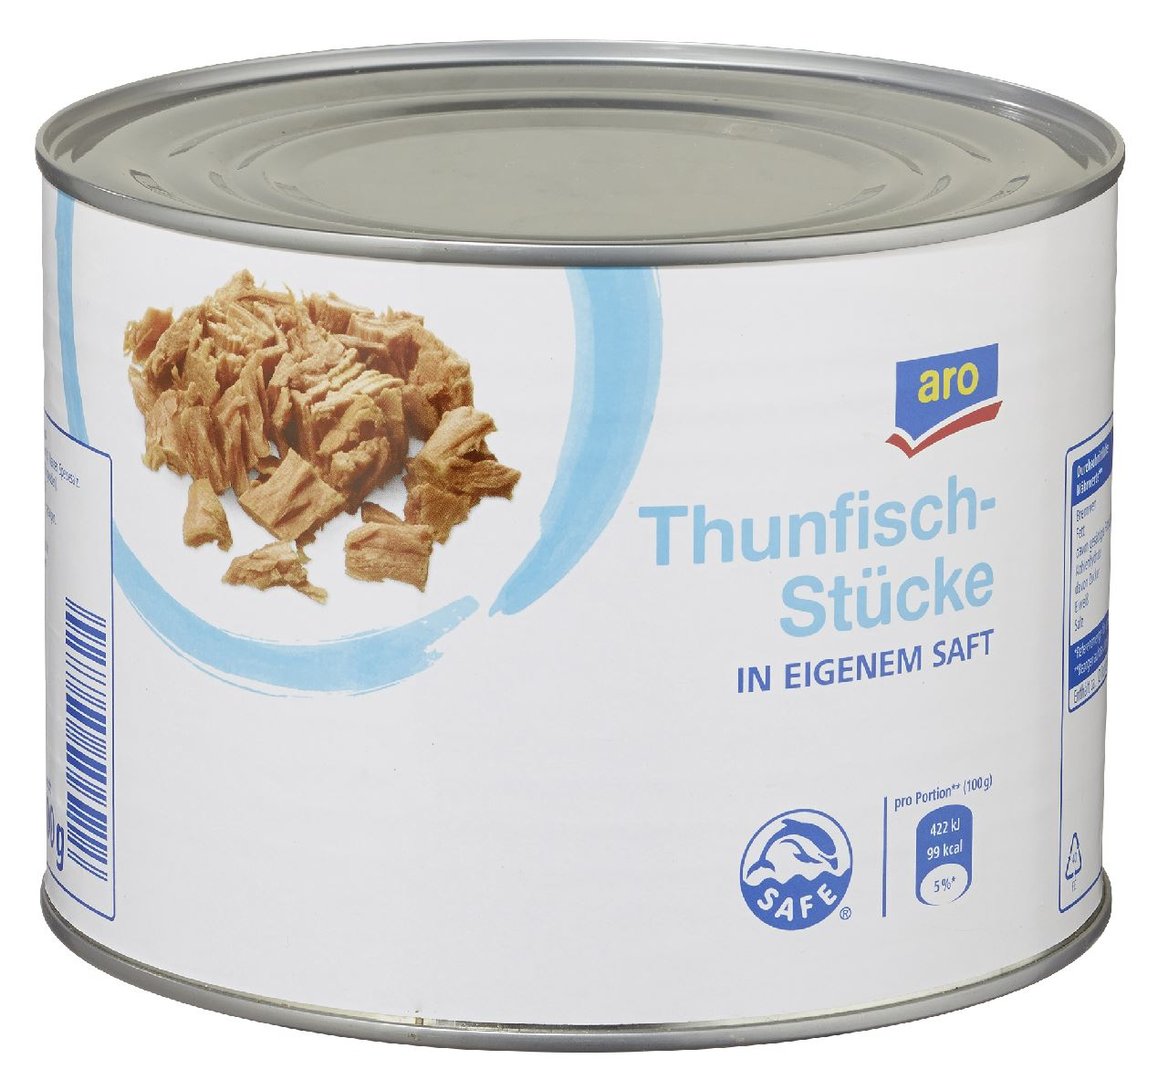 aro - Thunfischstücke in eigenem Saft - 1,705 kg Dose